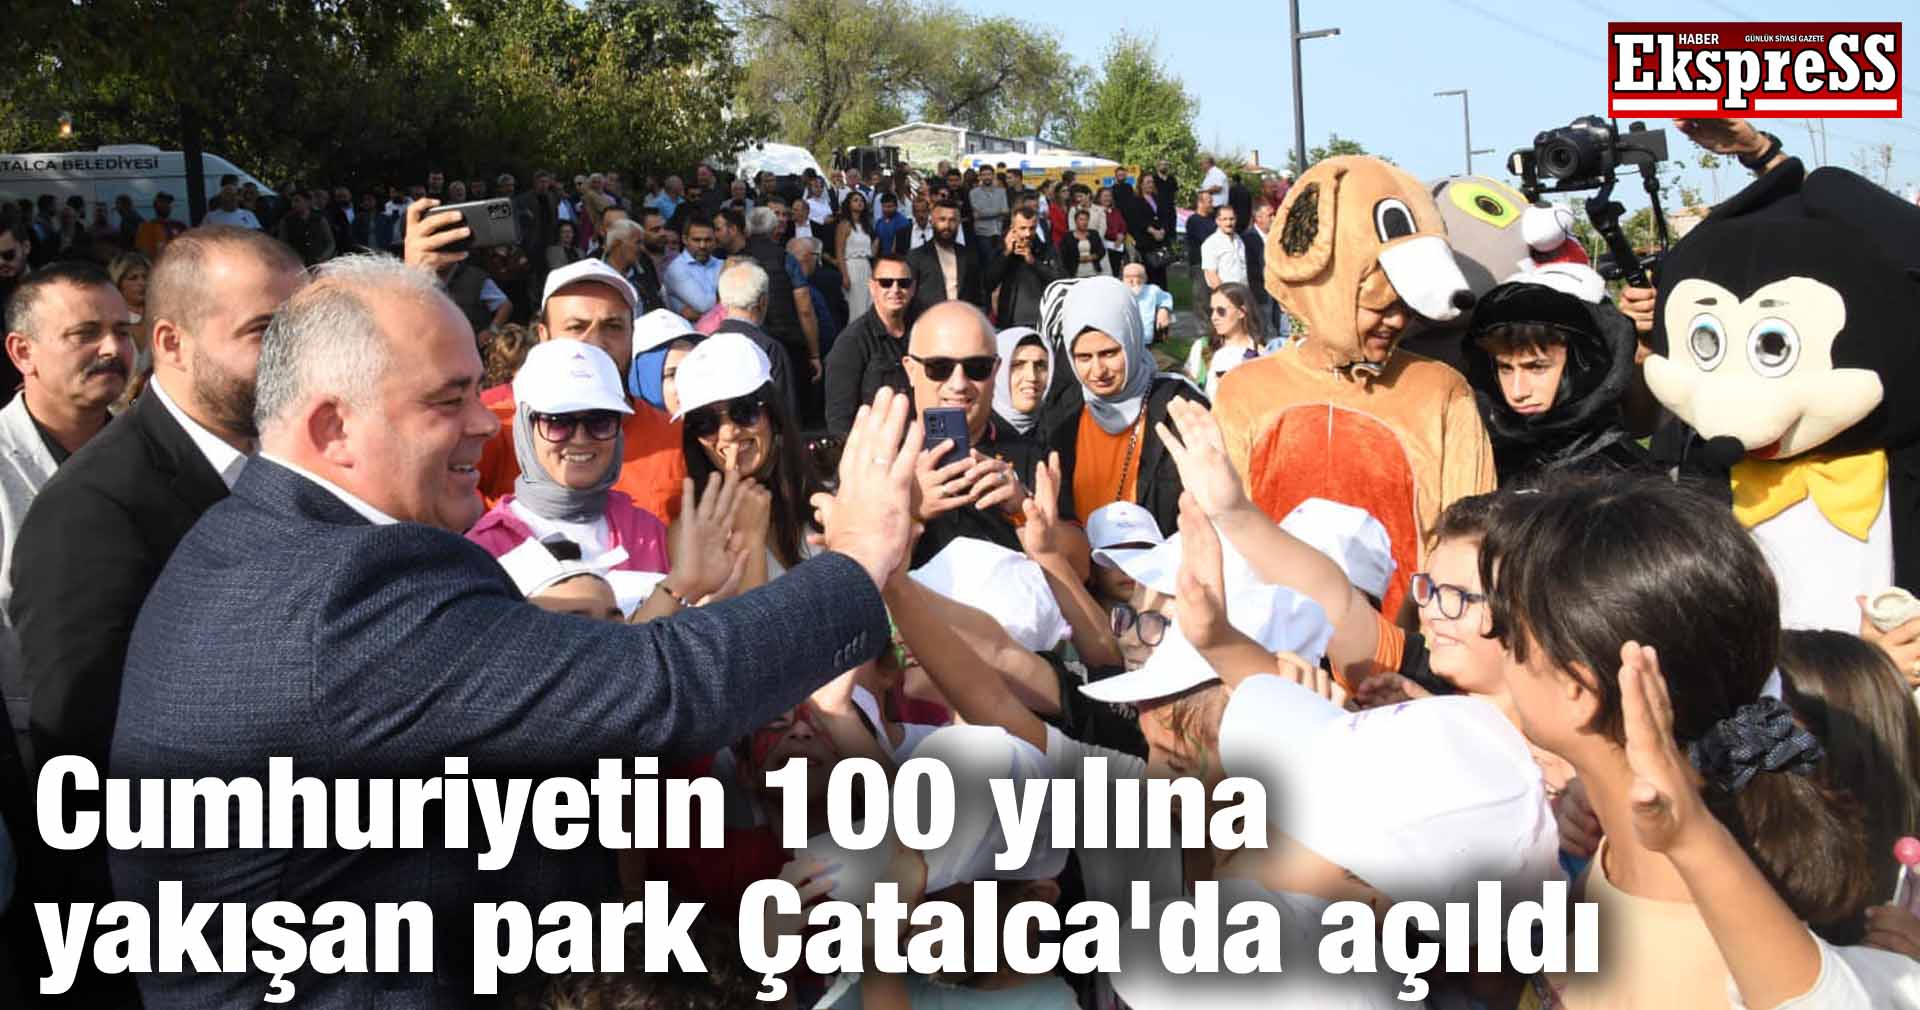 Cumhuriyetin 100 yılına yakışan park Çatalca’da açıldı